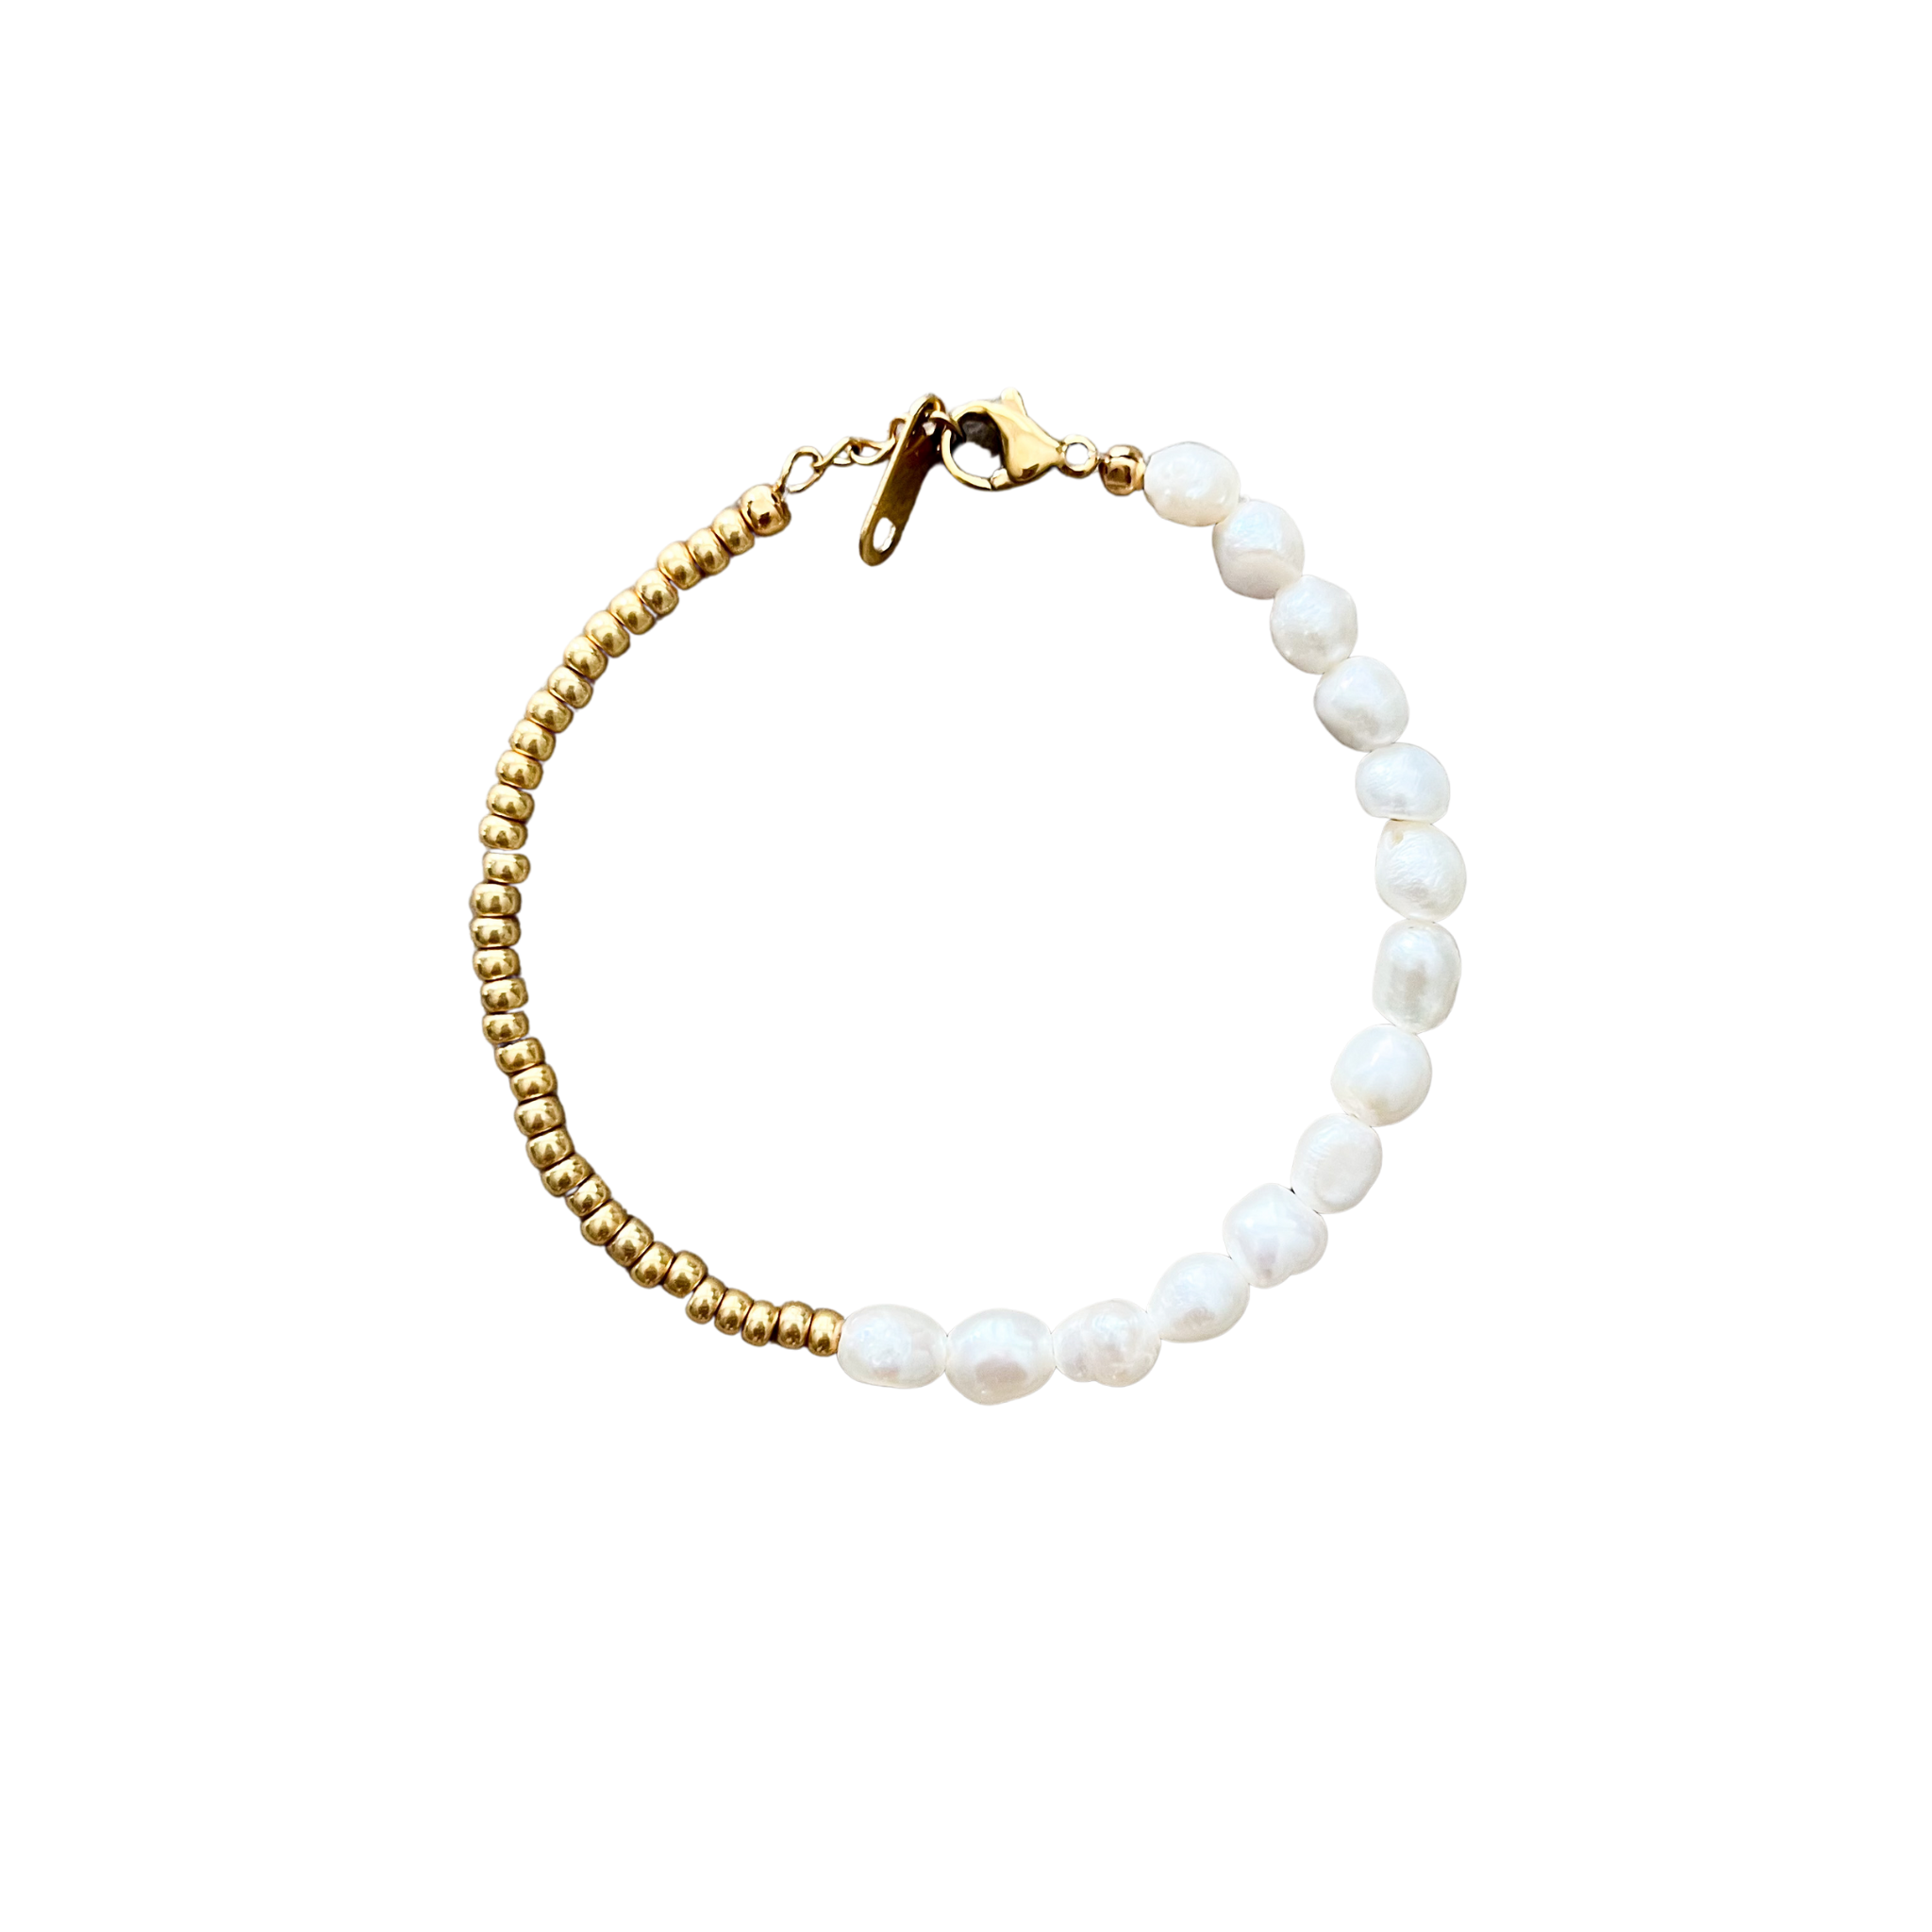 One of a little pearl bracelet